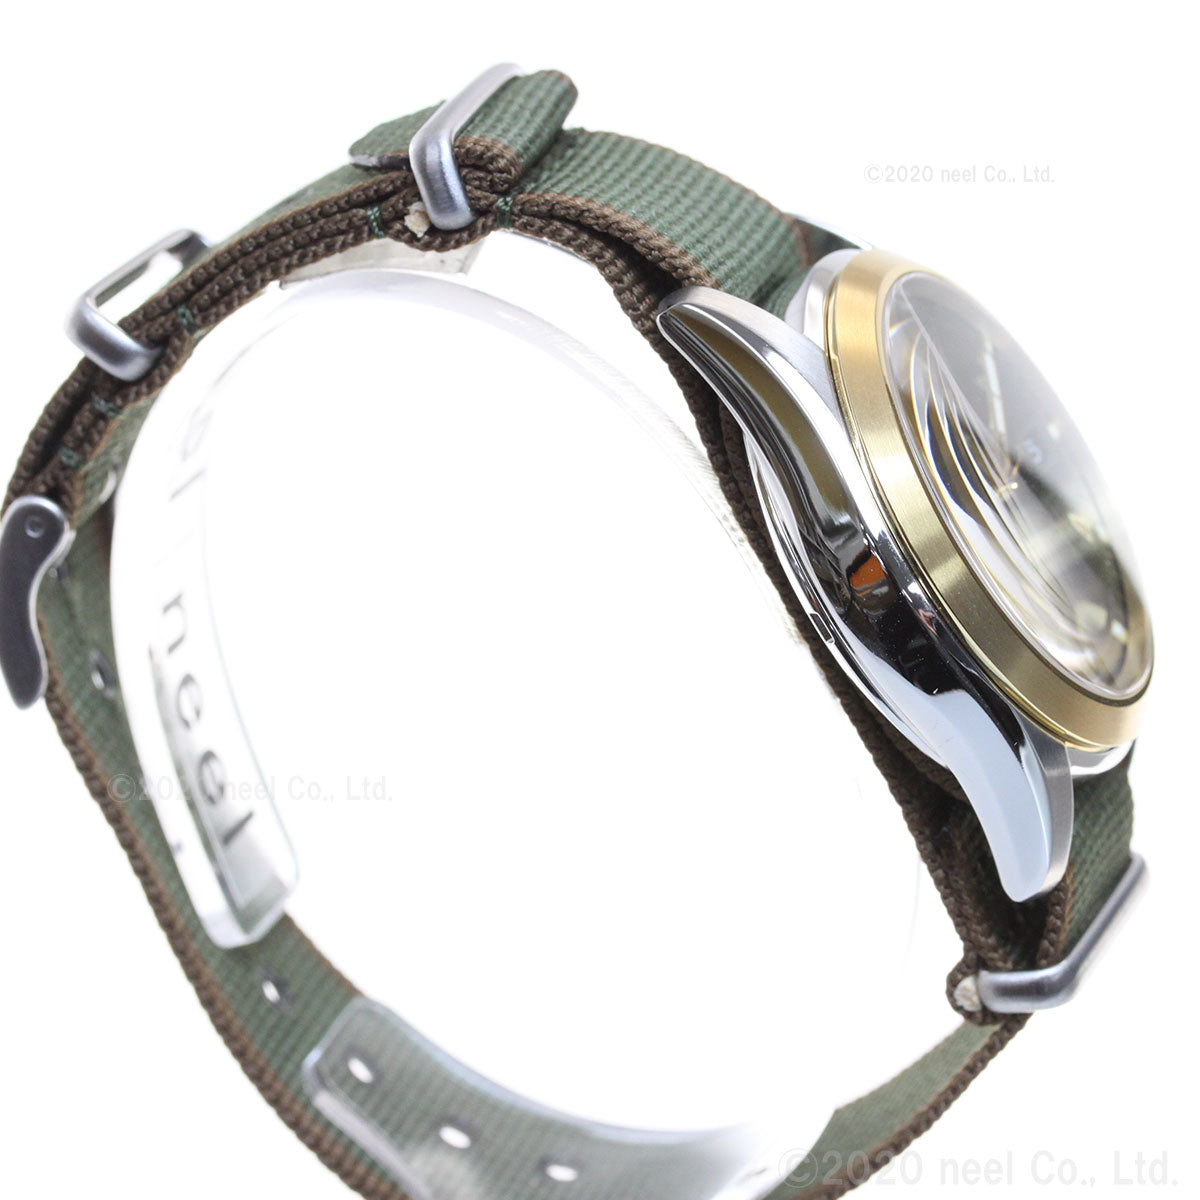 セイコー プロスペックス アルピニスト メカニカル 限定モデル 自動巻き メンズ 腕時計 SBDC138 SEIKO PROSPEX